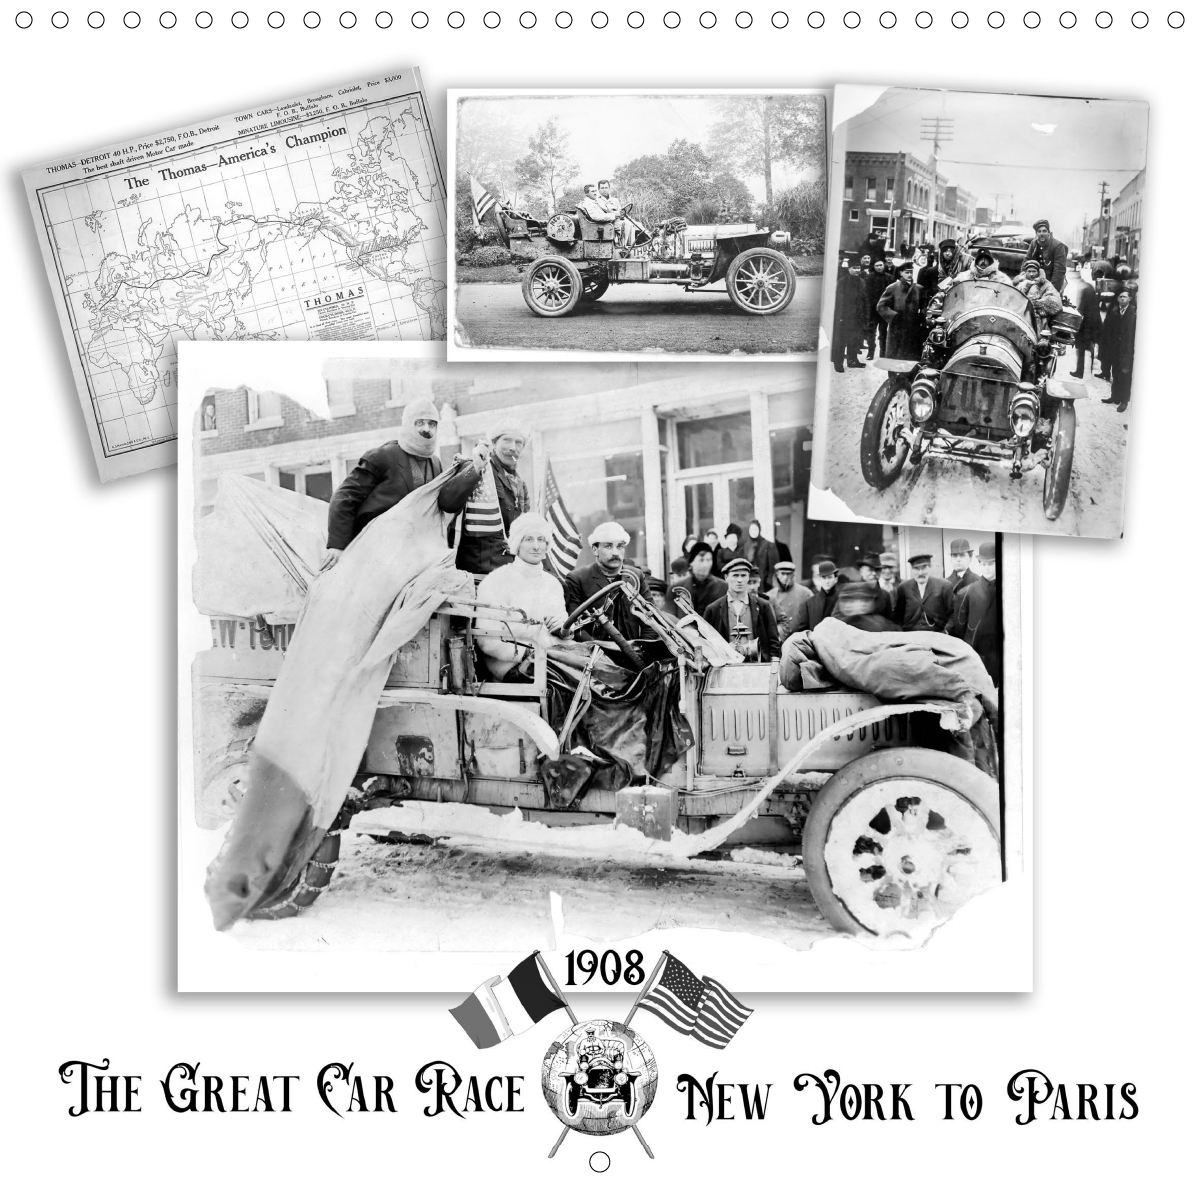 Calendar – The Great Car Race New York to Paris (1908)